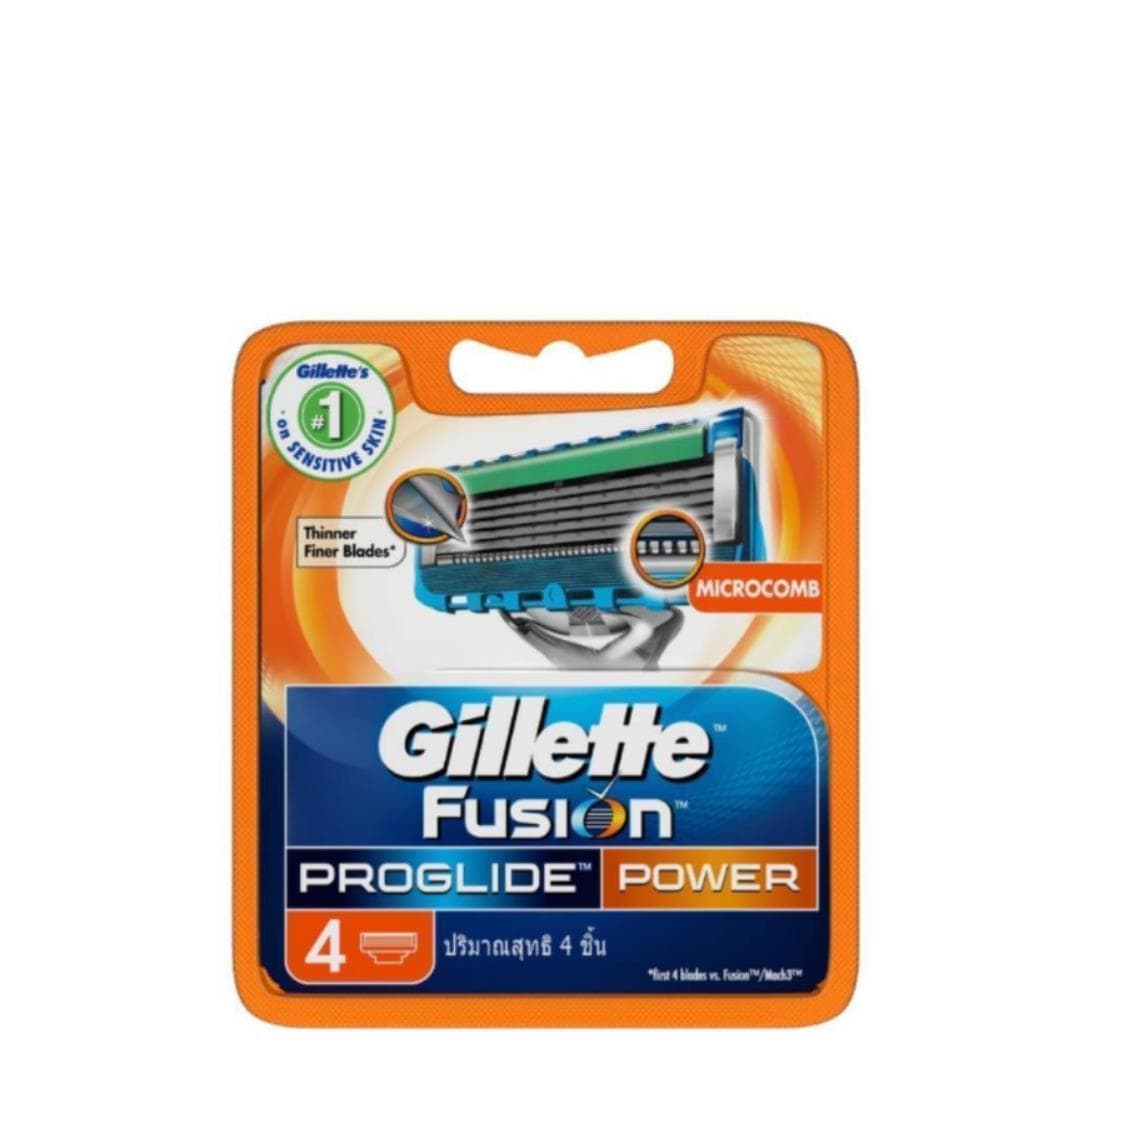 Gillette Toiletries Gillette Fusion Proglide Power Razor Blades, 4's 7702018085576 142575